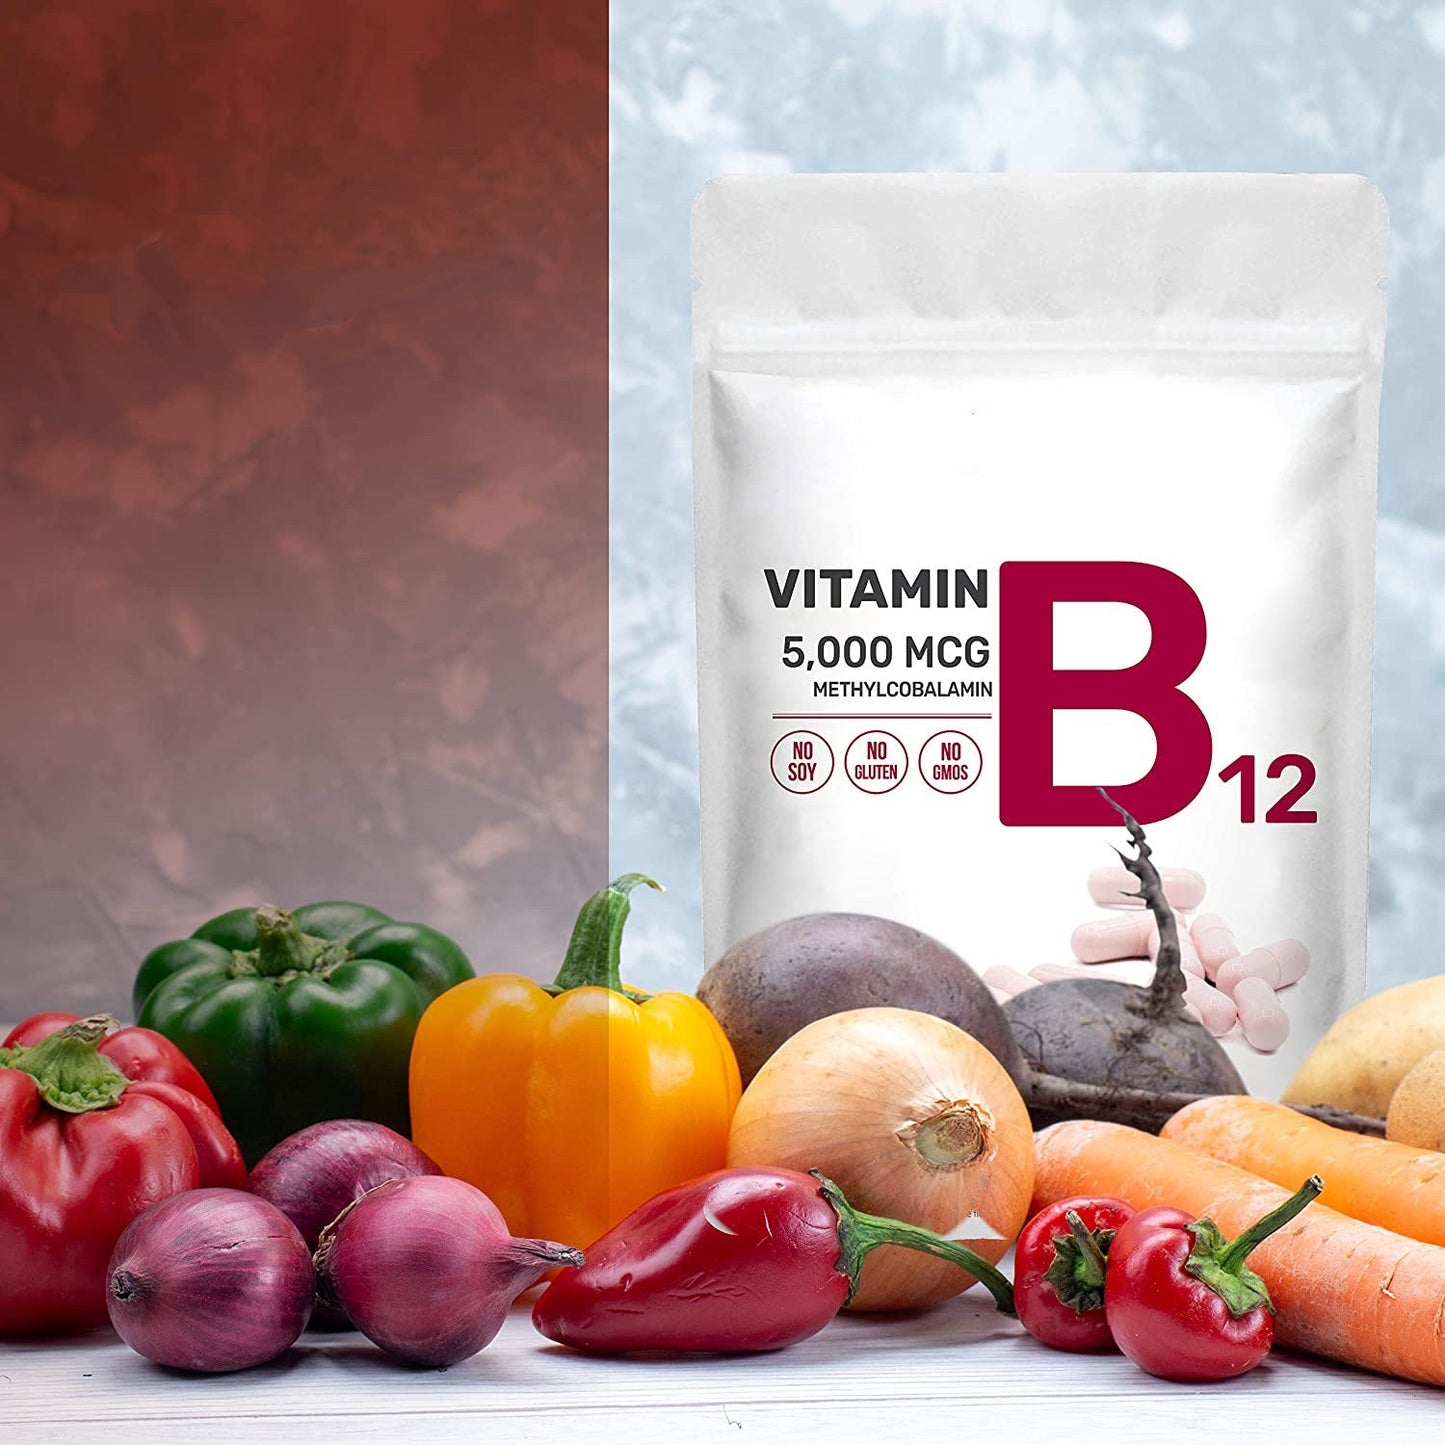 Organic Vitamin B12 Methylcobalamin Supplement,Vitamin B12 Capsules